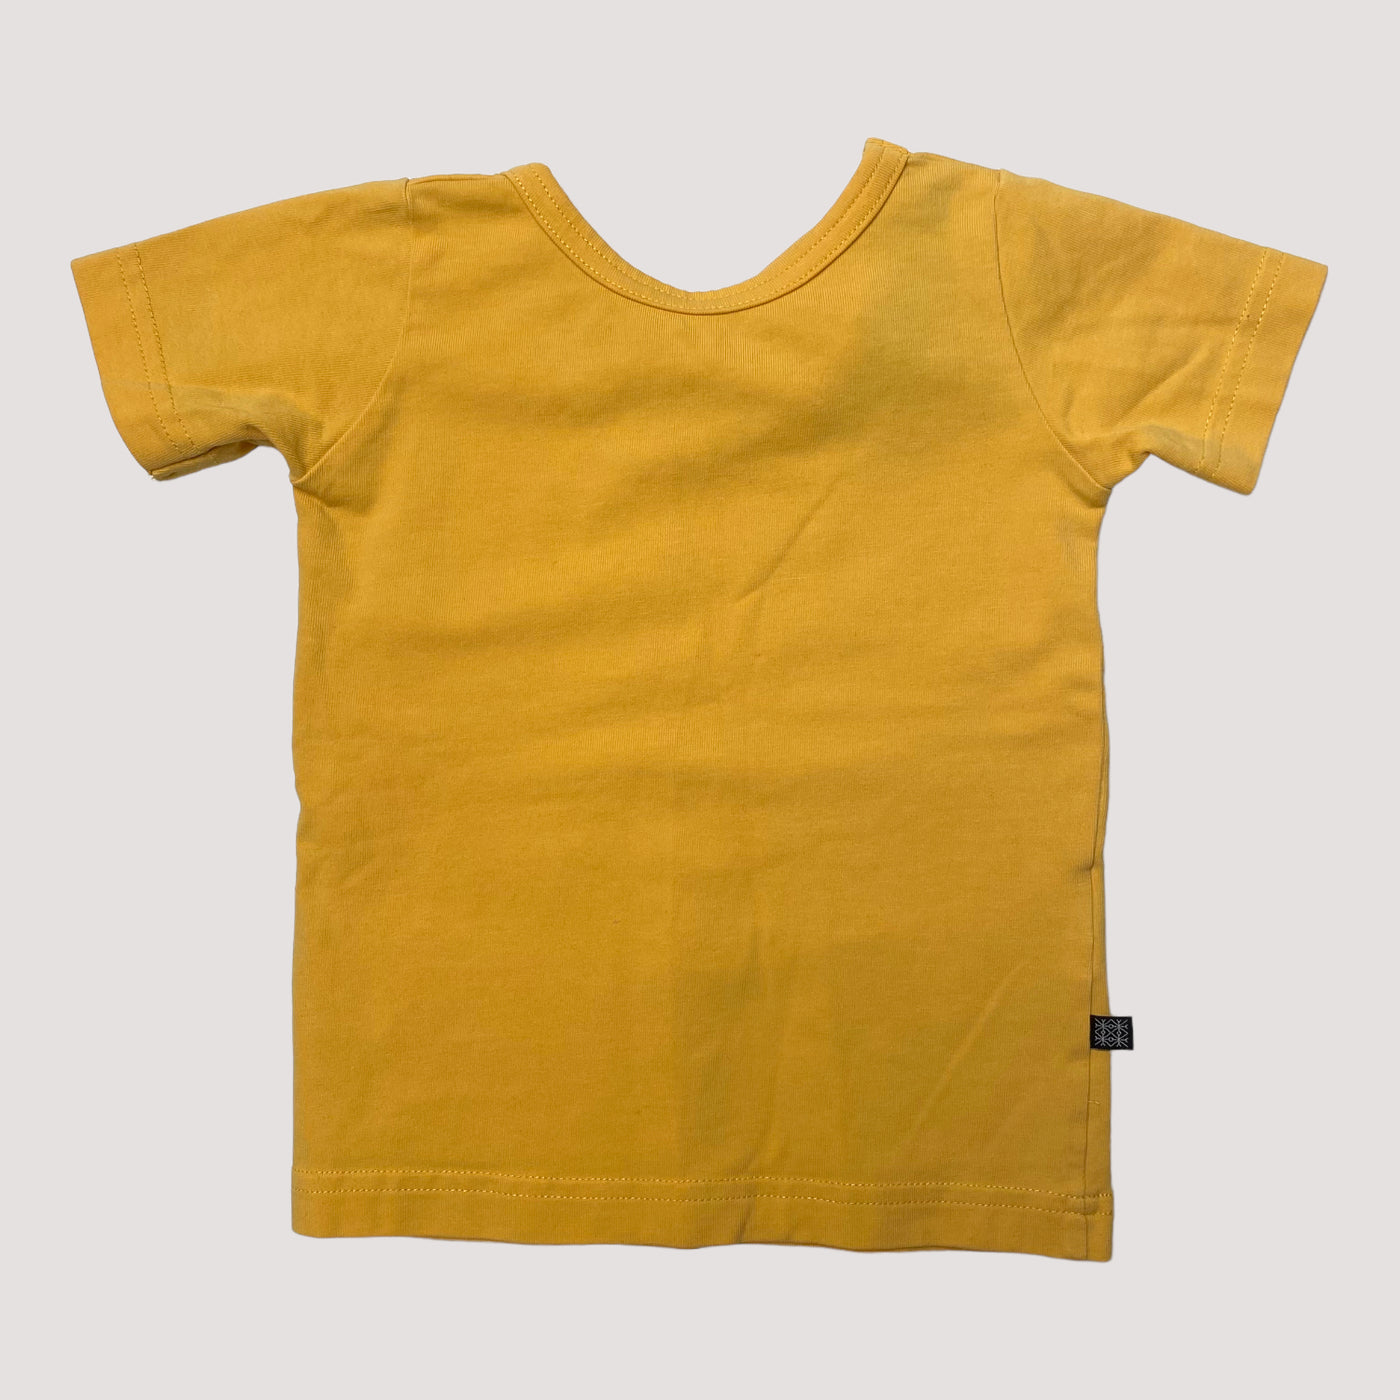 Kaiko cross t-shirt, yellow | 74/80cm